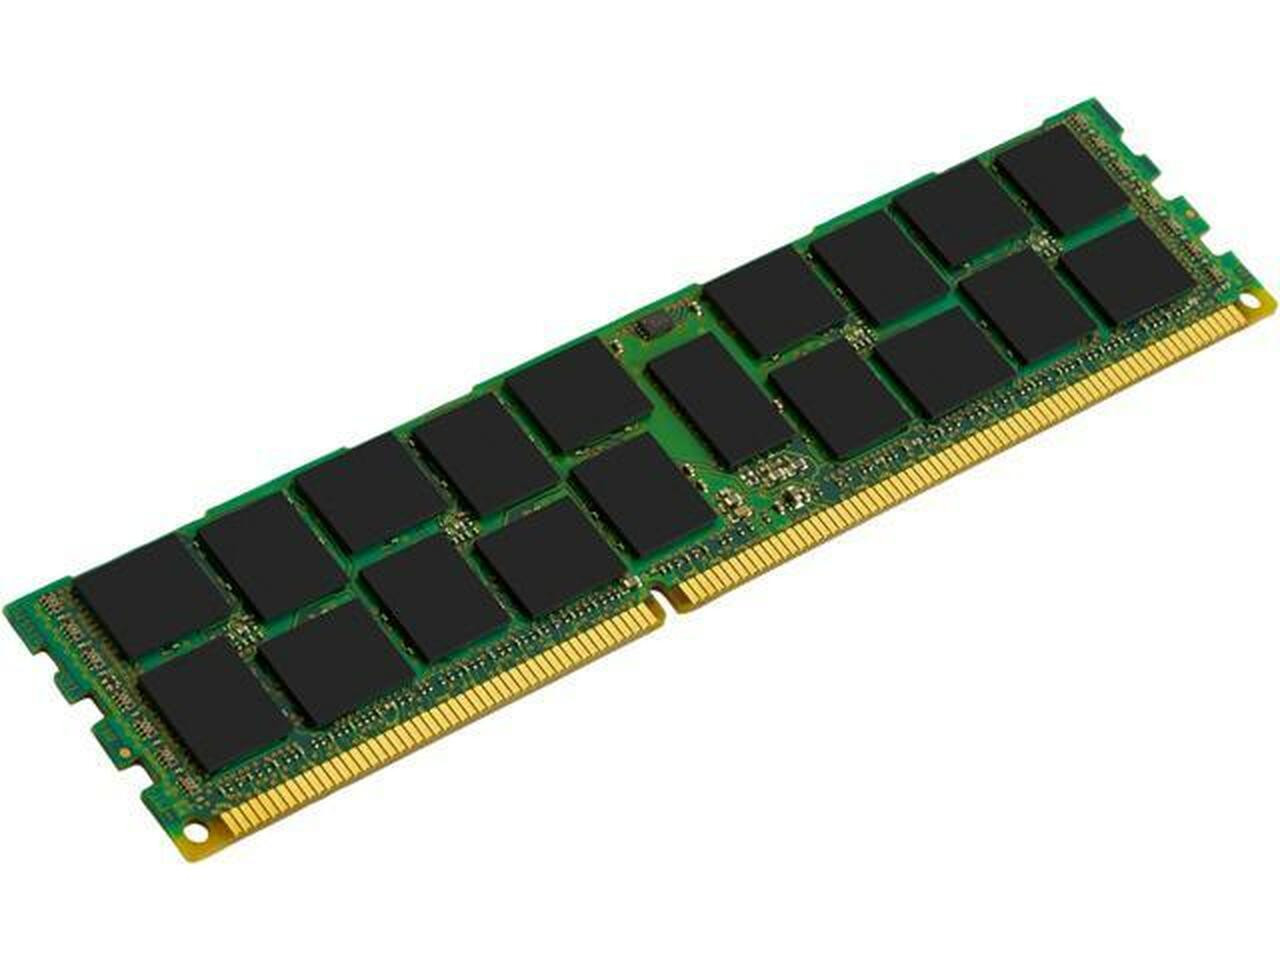 Netpatibles 32GB DDR4 SDRAM Memory Module - MEMDR432LHL01ER21NPM